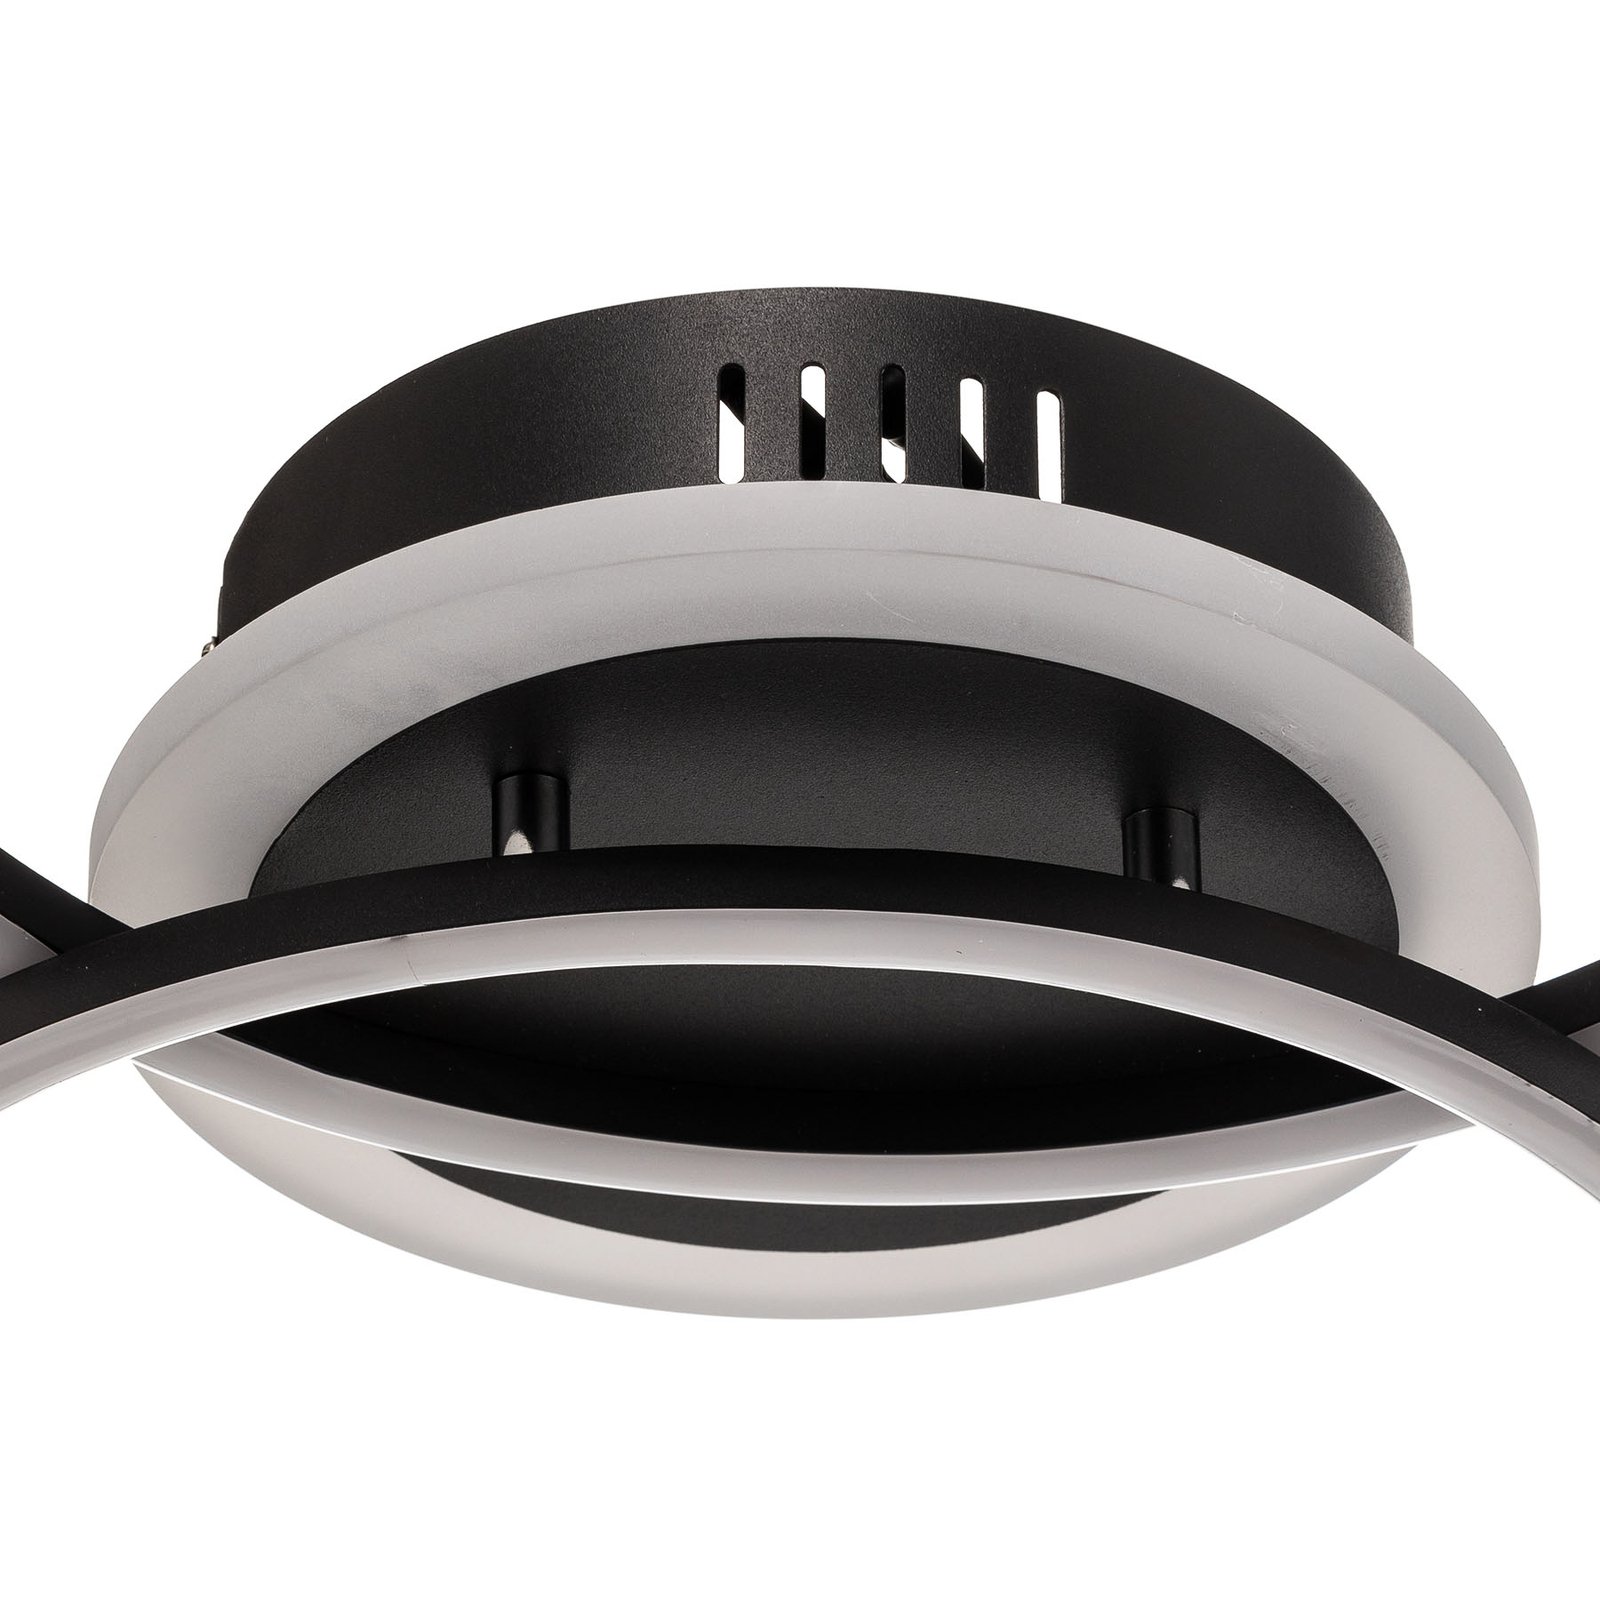 LED stropní světlo Venida kruhový design, černá